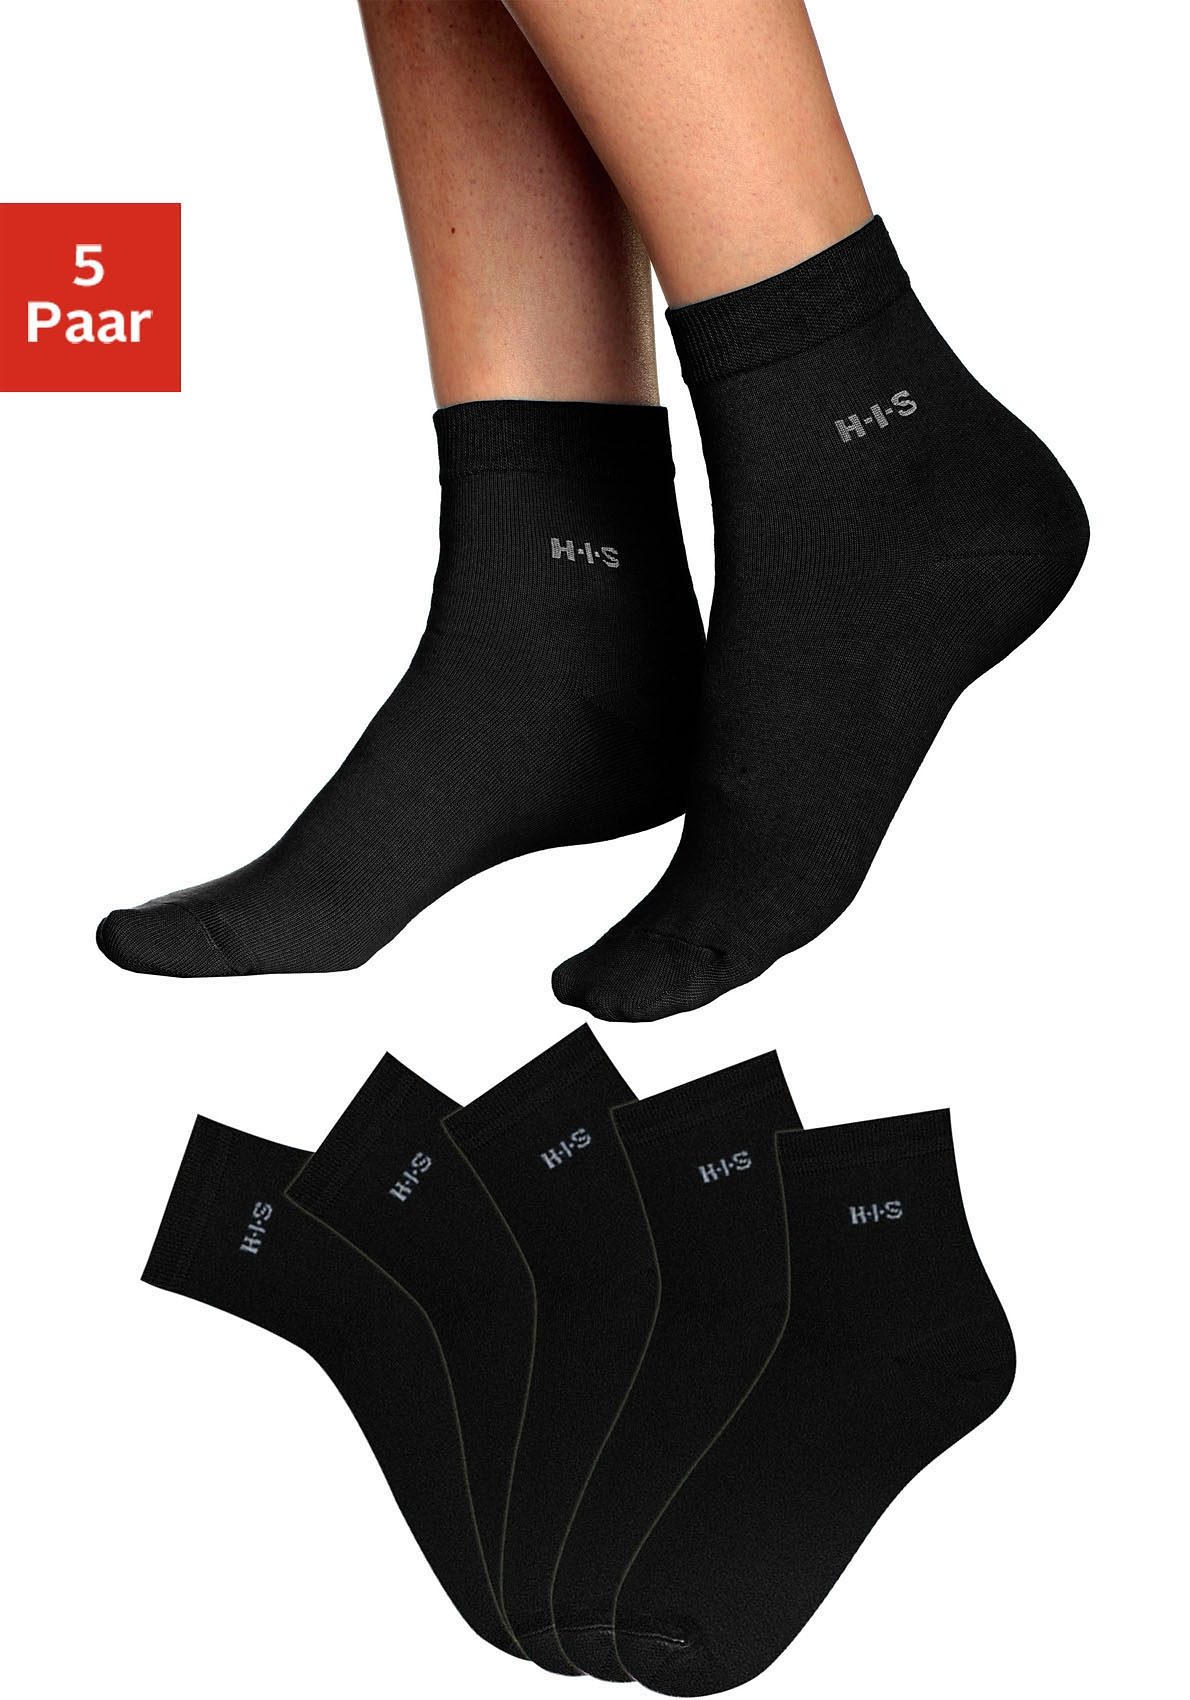 H.I.S Korte sokken met boord boven de enkel (5 paar 5 5 paar)